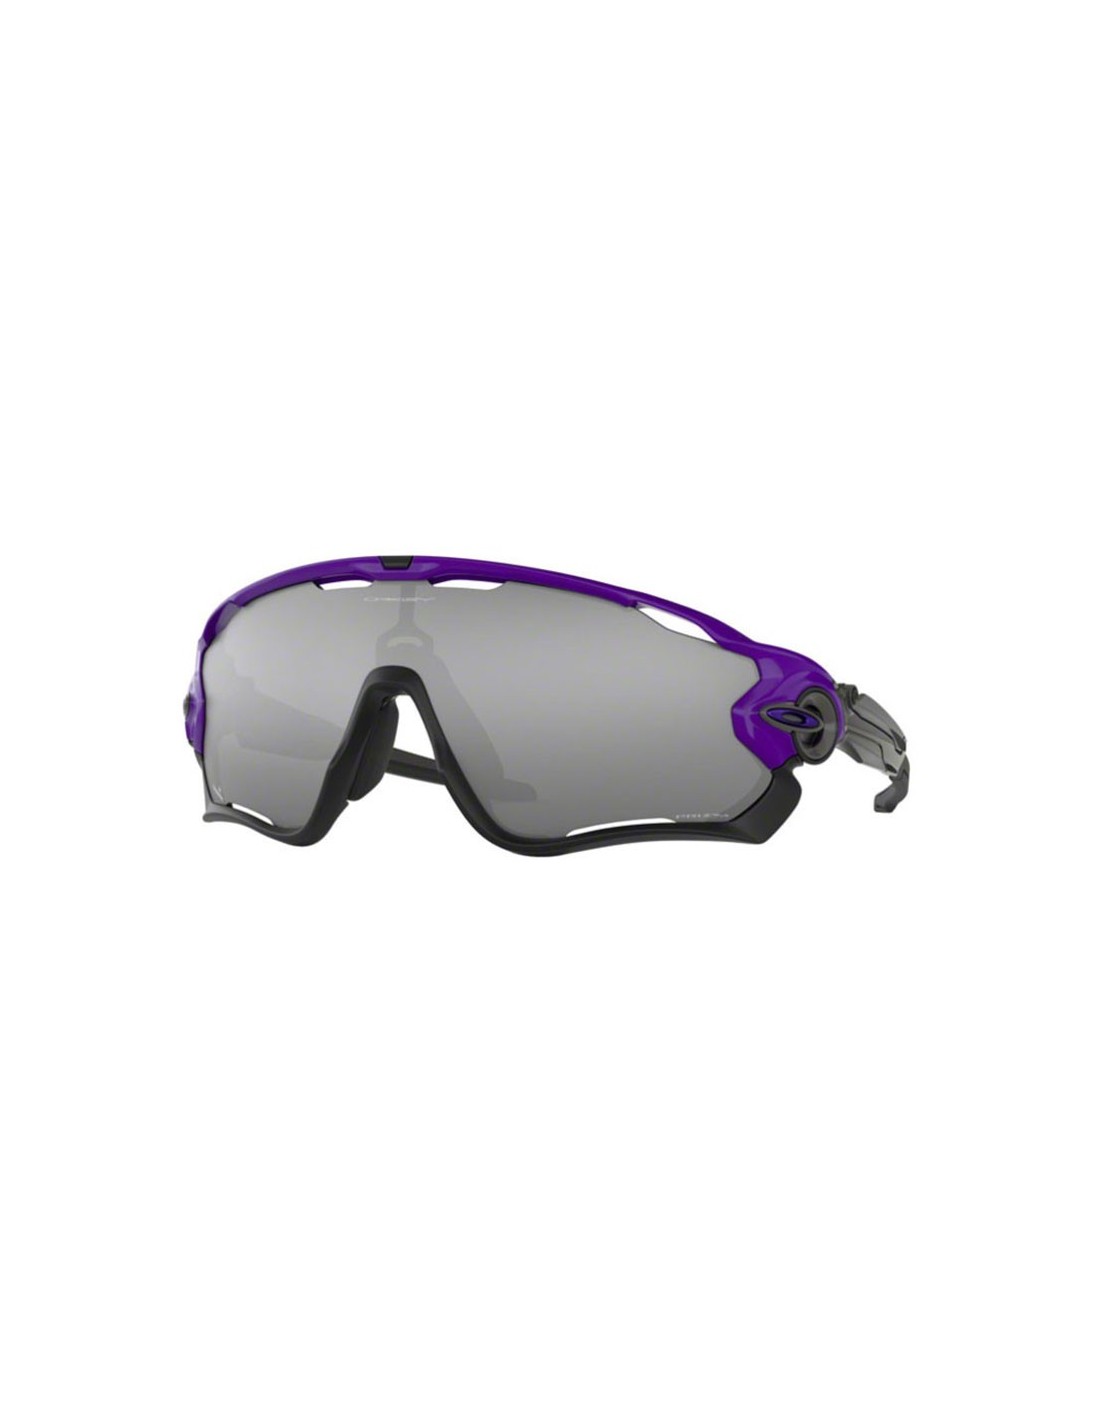 Oakley Sonnenbrille Jawbreaker Electric Purple, Prizm Black Iridium Brillenfassung - Lifestylebrillen, von Oakley